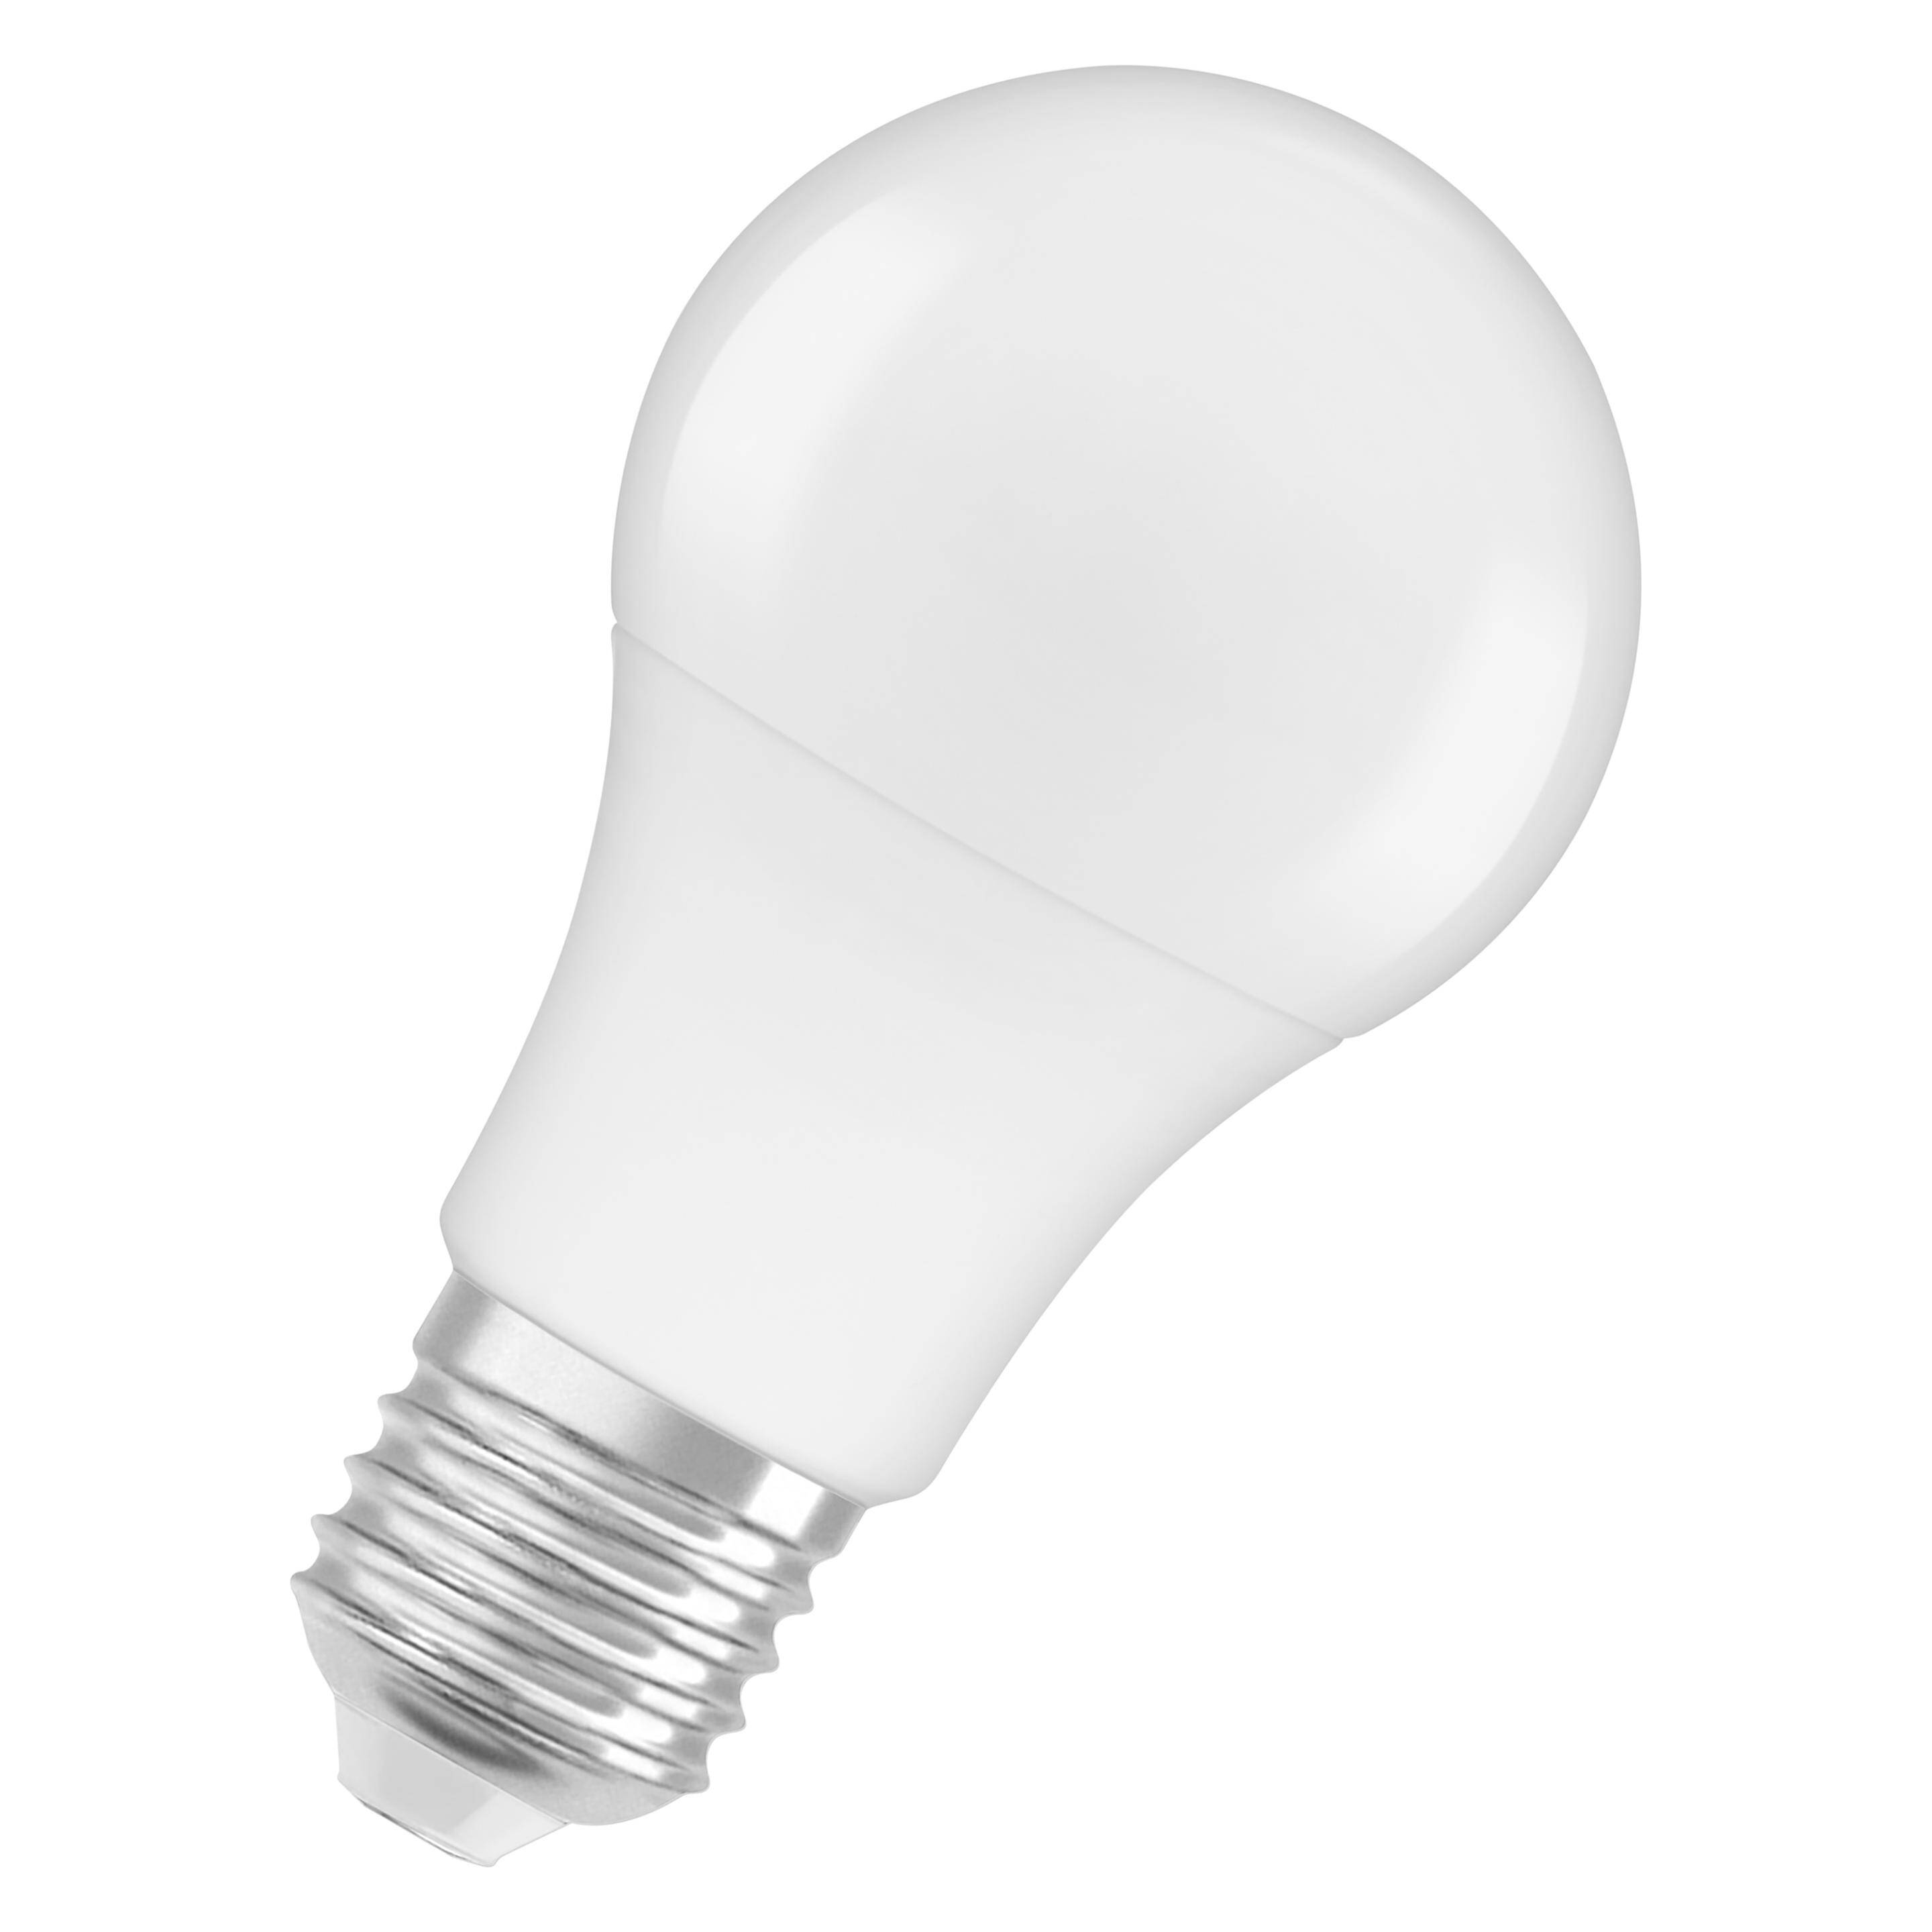 LAMPA LED SMD A60 8,5W 200 ST. E27 220-240V IP20 2700K 806 lm